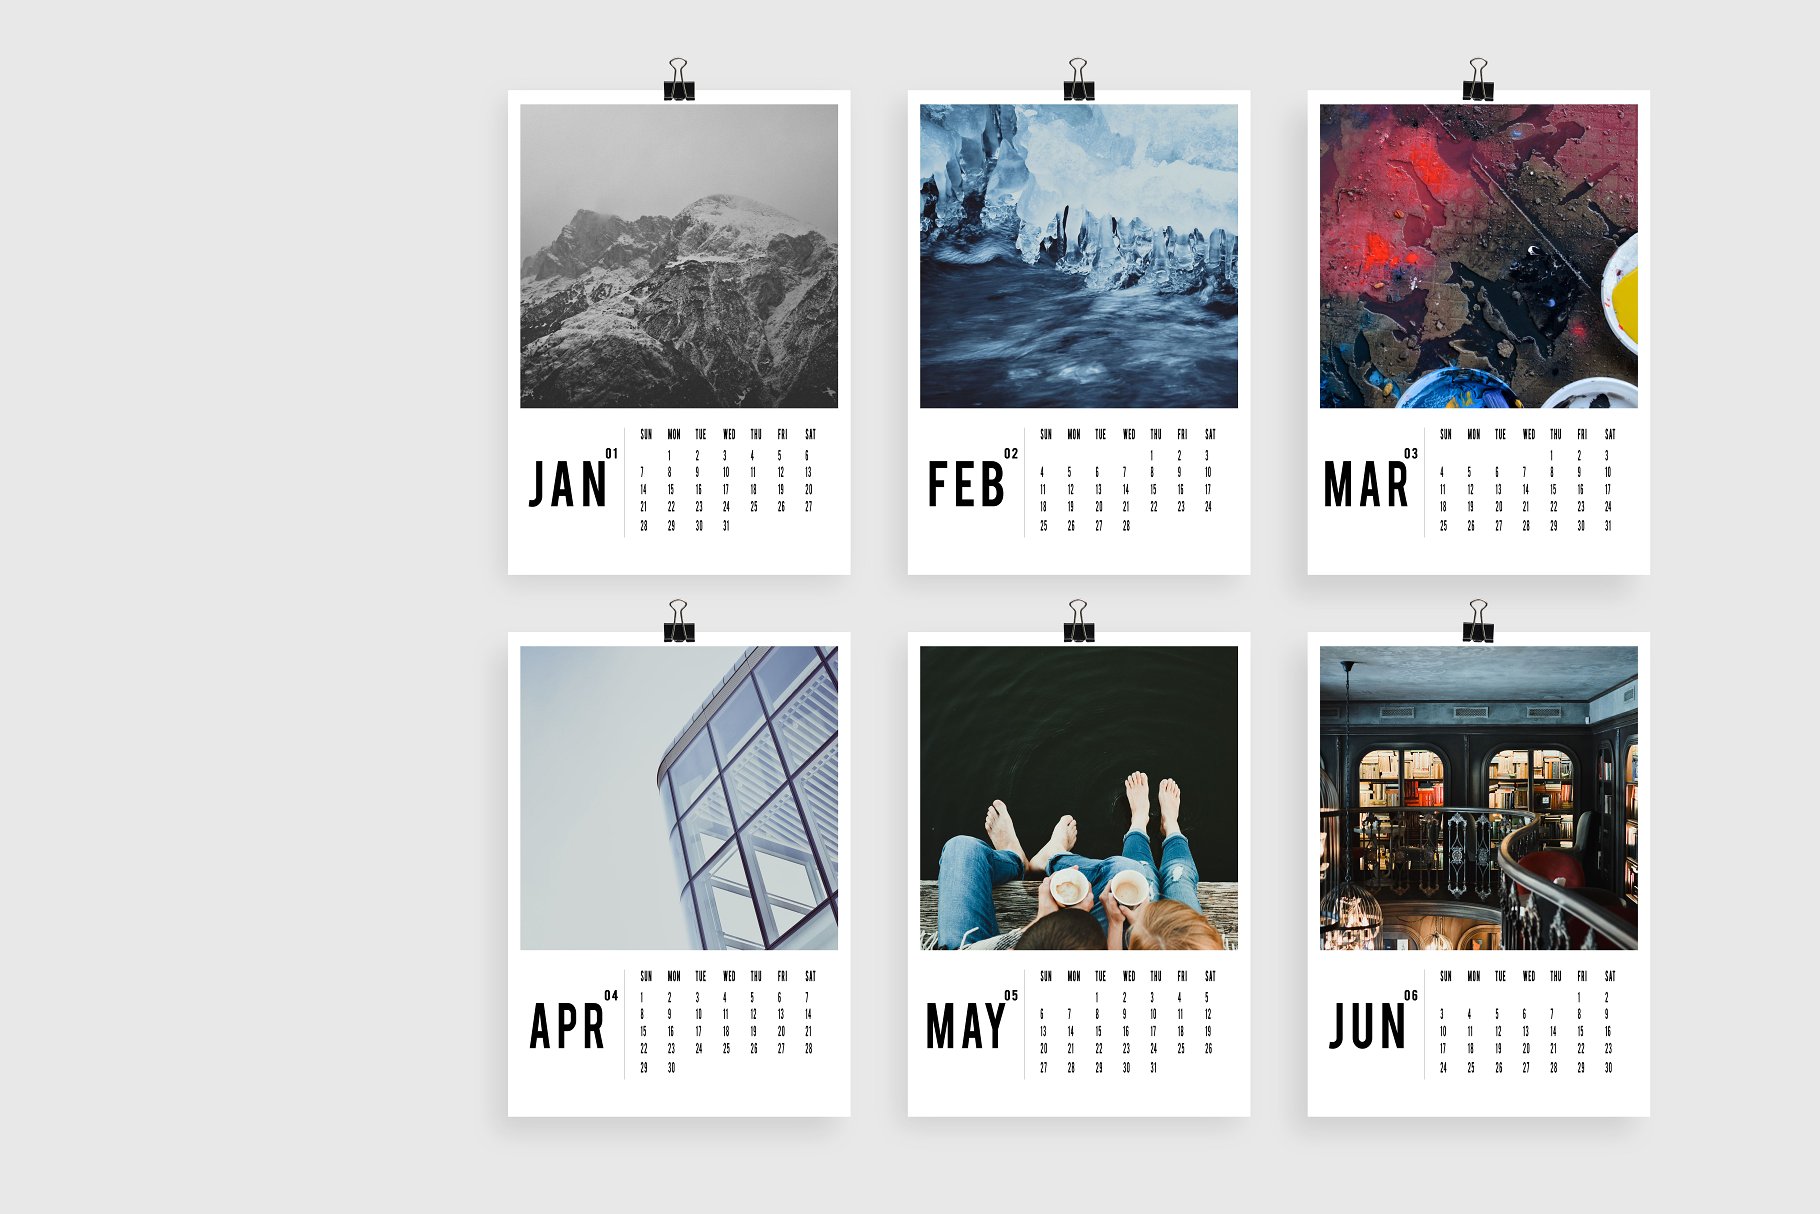 现代极简主义艺术年历日历样机 Modern Art Minimal Calendar 2018插图